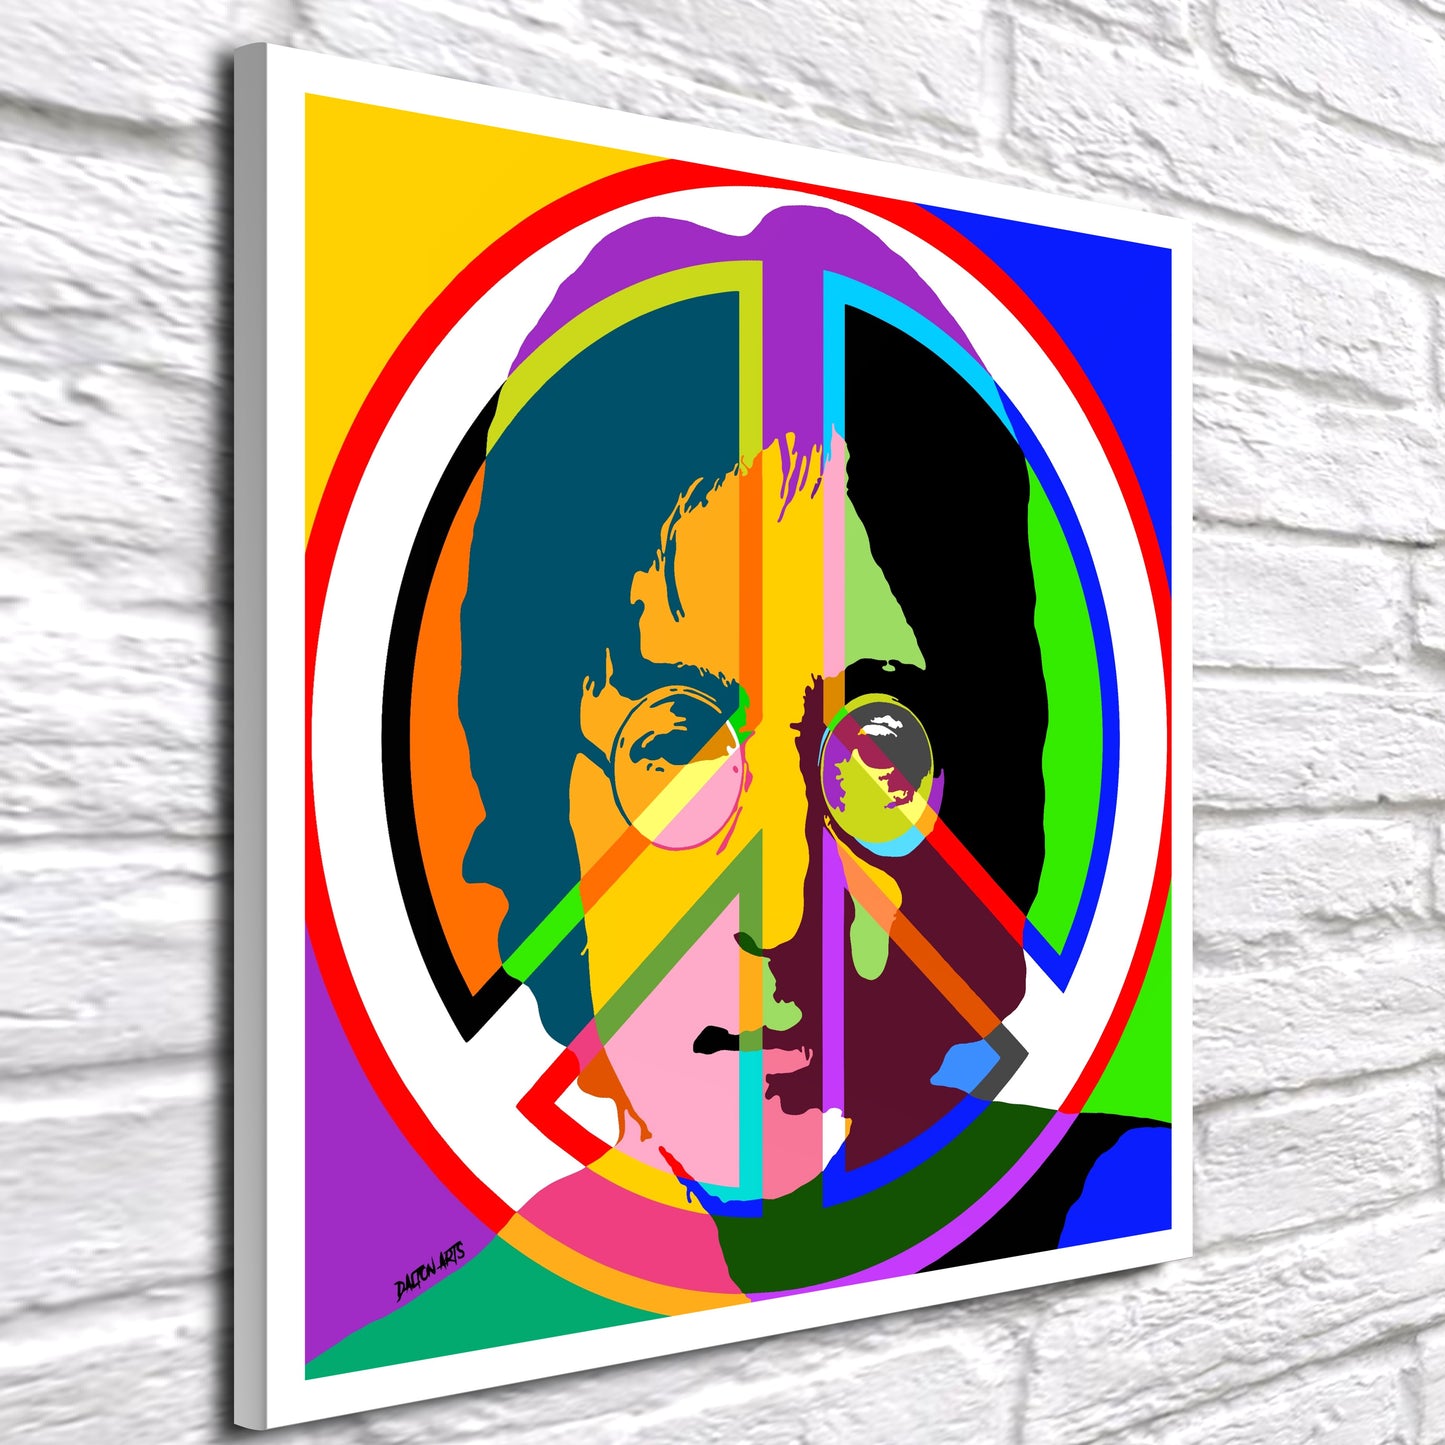 John Lennon Pop Art